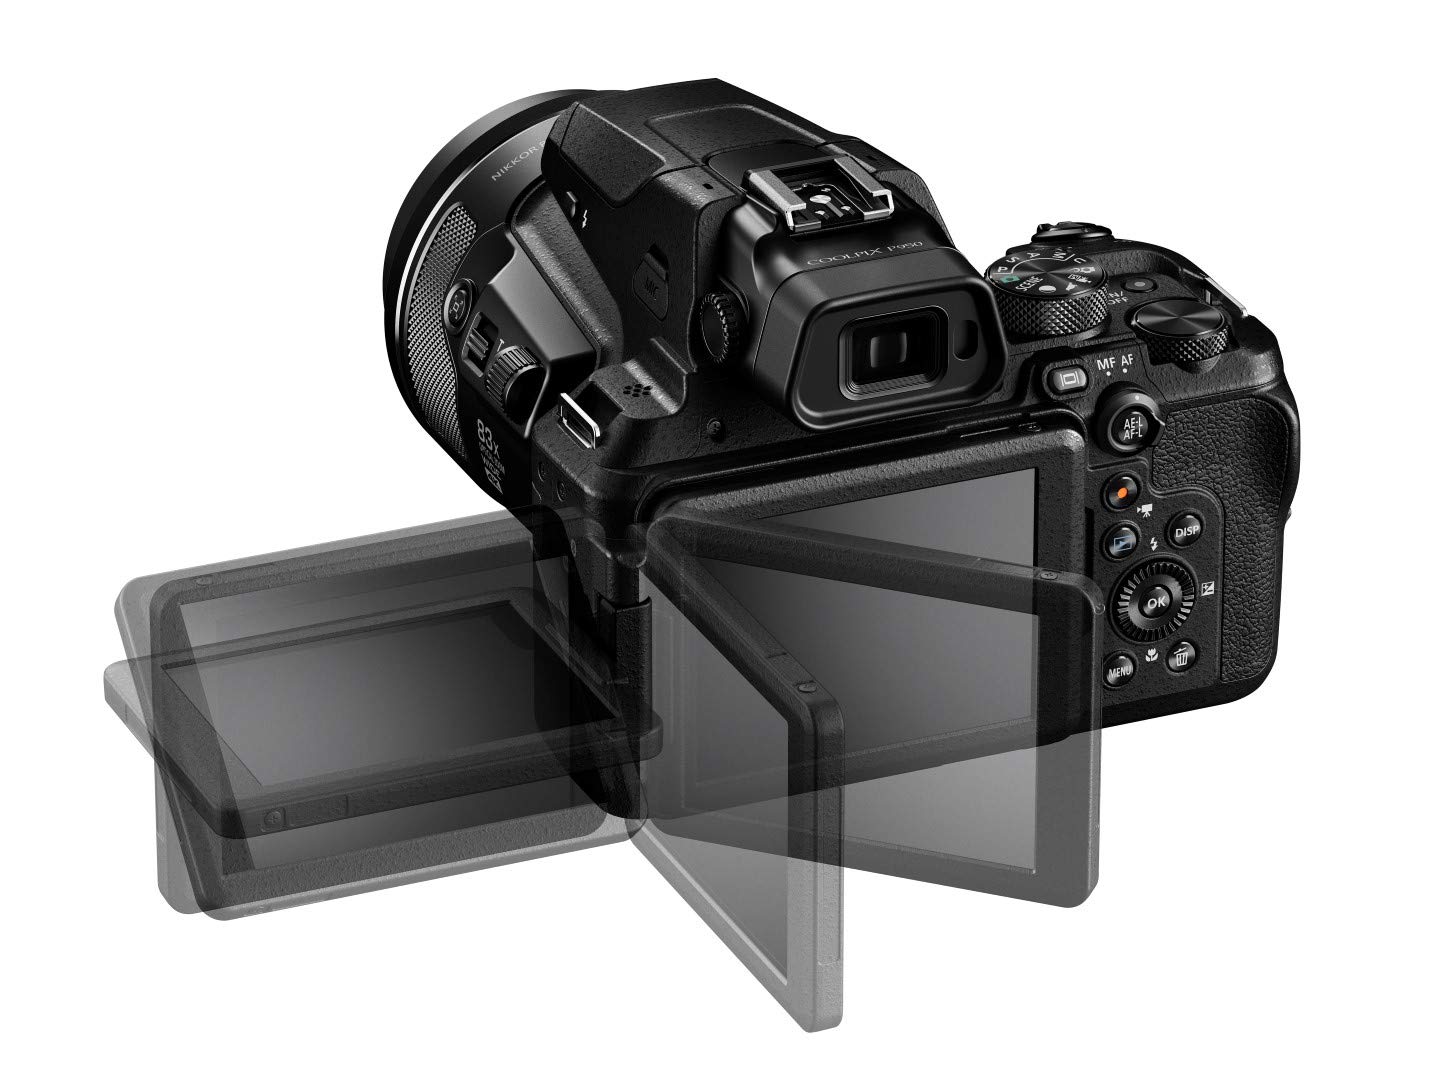 Nikon COOLPIX P950 Black